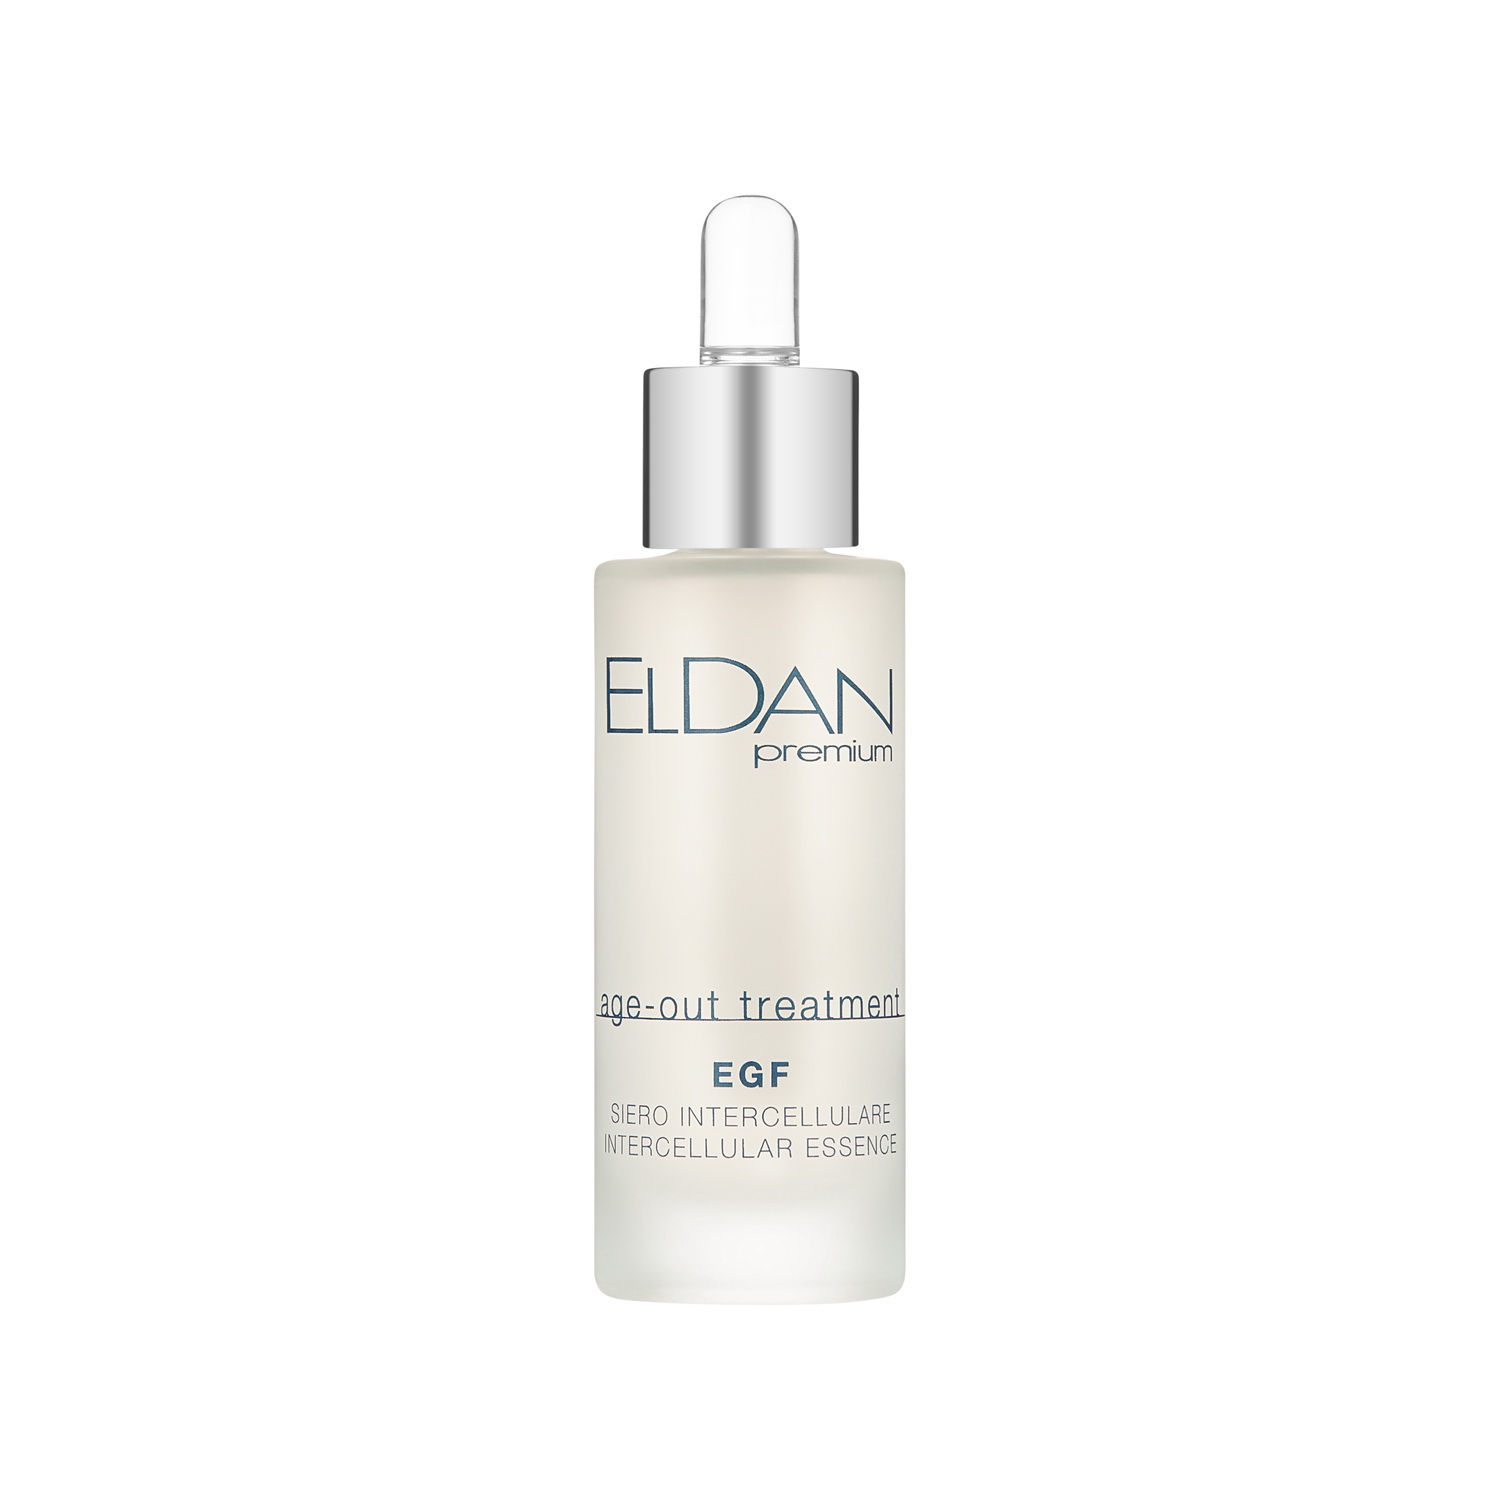 Сыворотка для лица Eldan Cosmetics EGF Intercellular Essence регенерирующая, 30 мл novosvit ampoule smooth ac сыворотка пилинг aha bha и pha кислоты обновляющая для лица 25